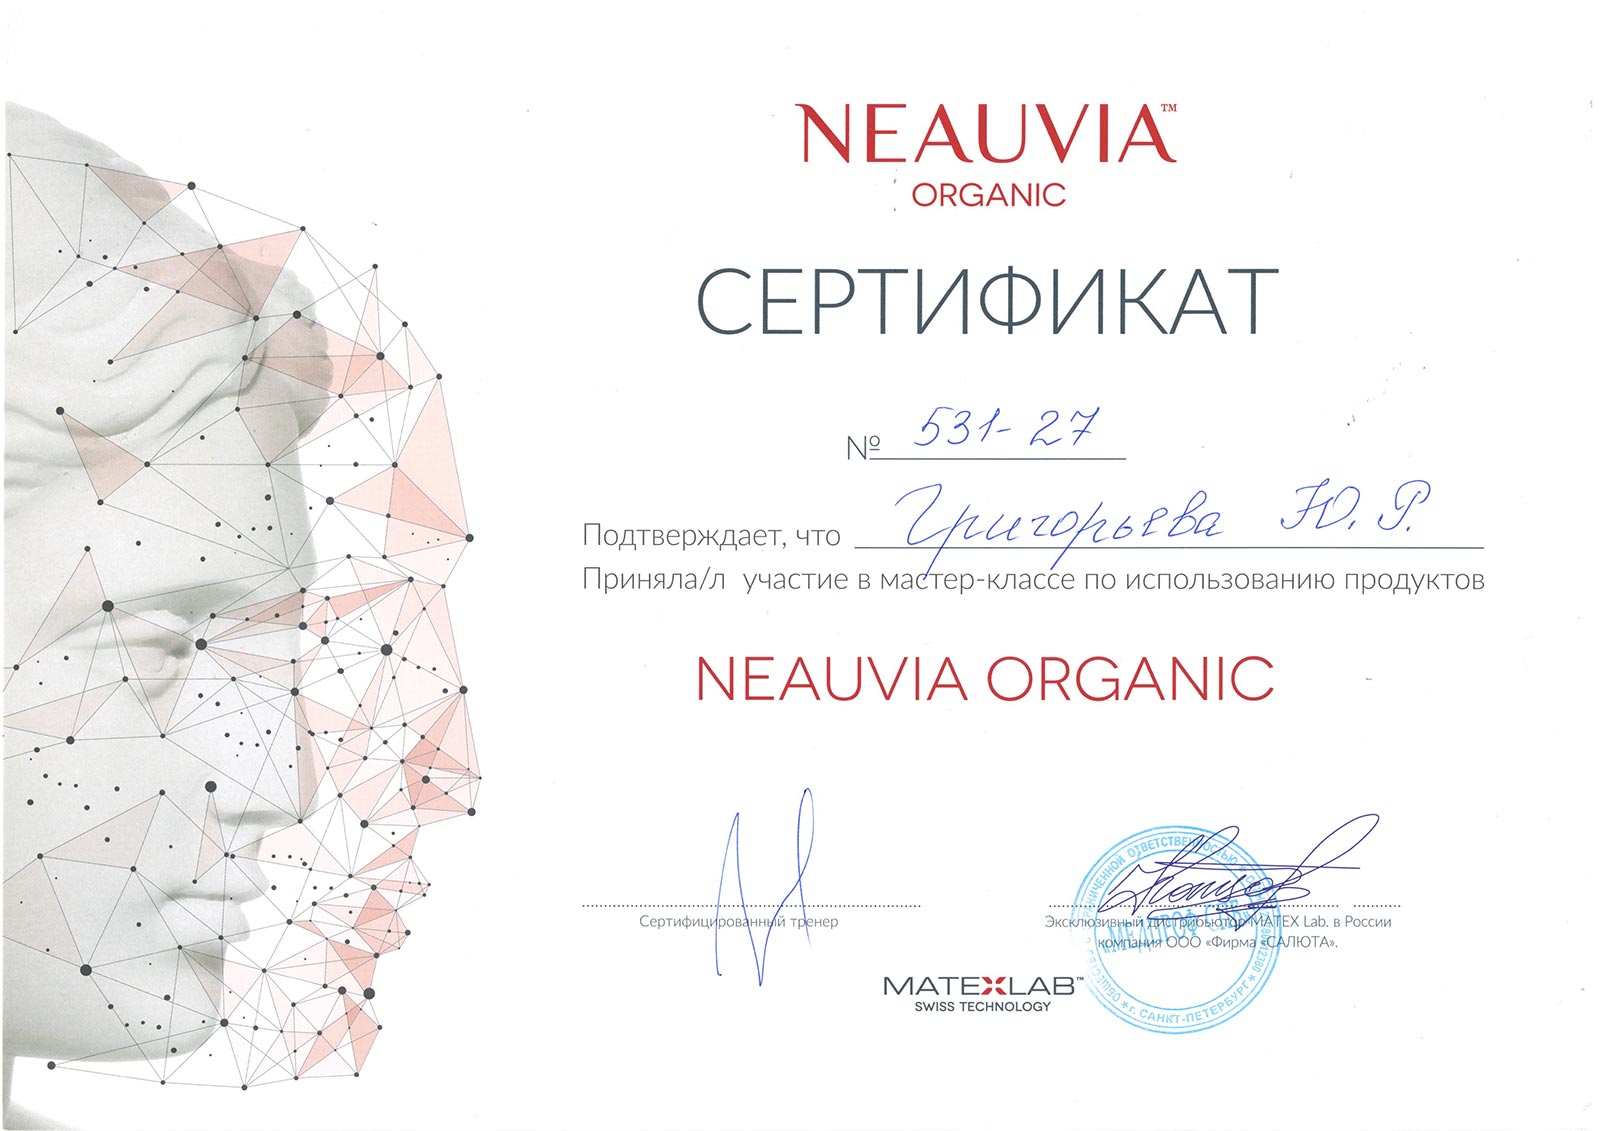 Сертификат — Мастер-класс по использованию продуктов Neauvia Organic. Григорьева Юлия Ростиславовна